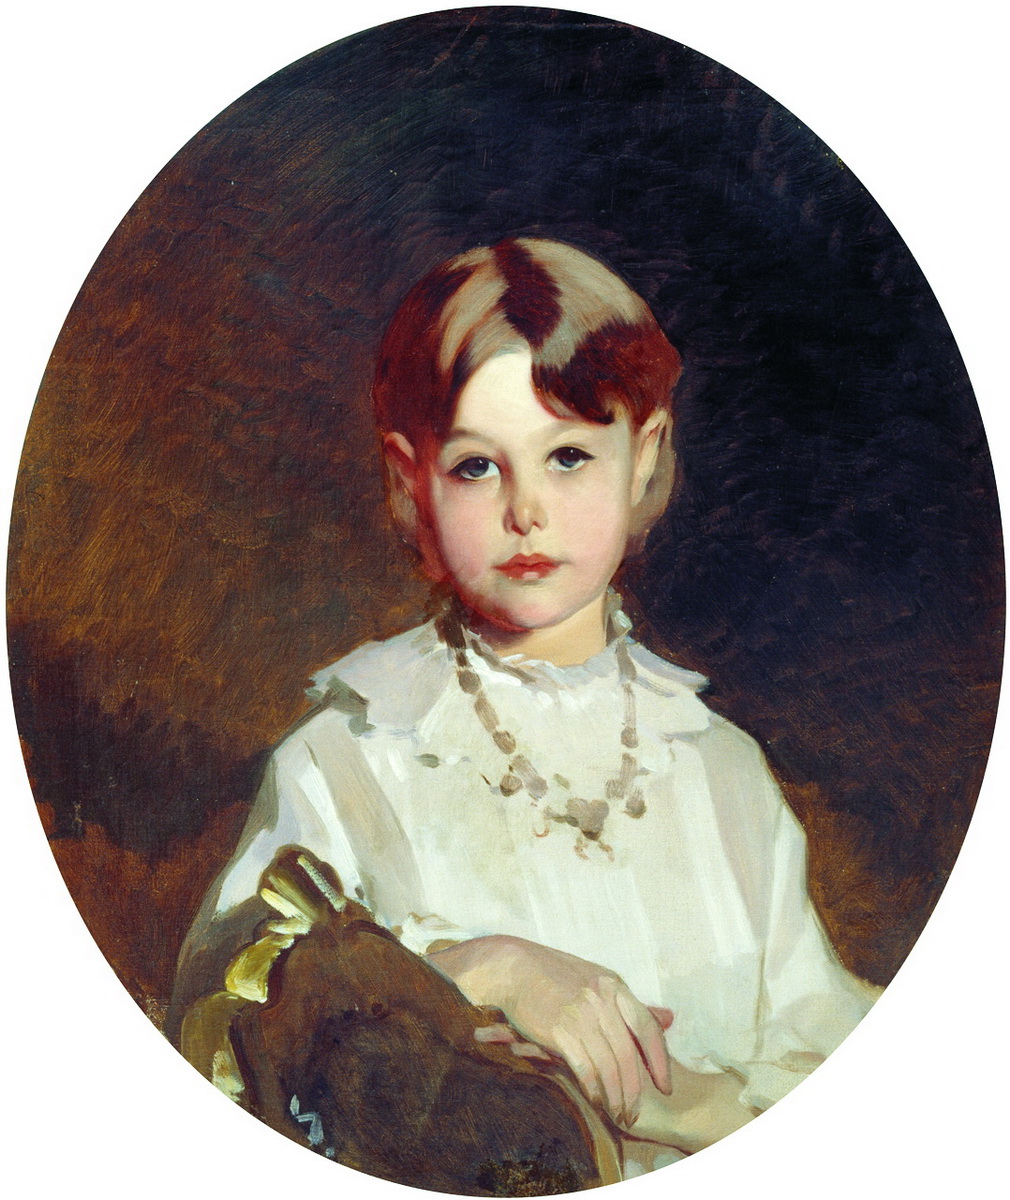 Макаров. Портрет графини А.С. Шереметевой в детстве. 1880-е